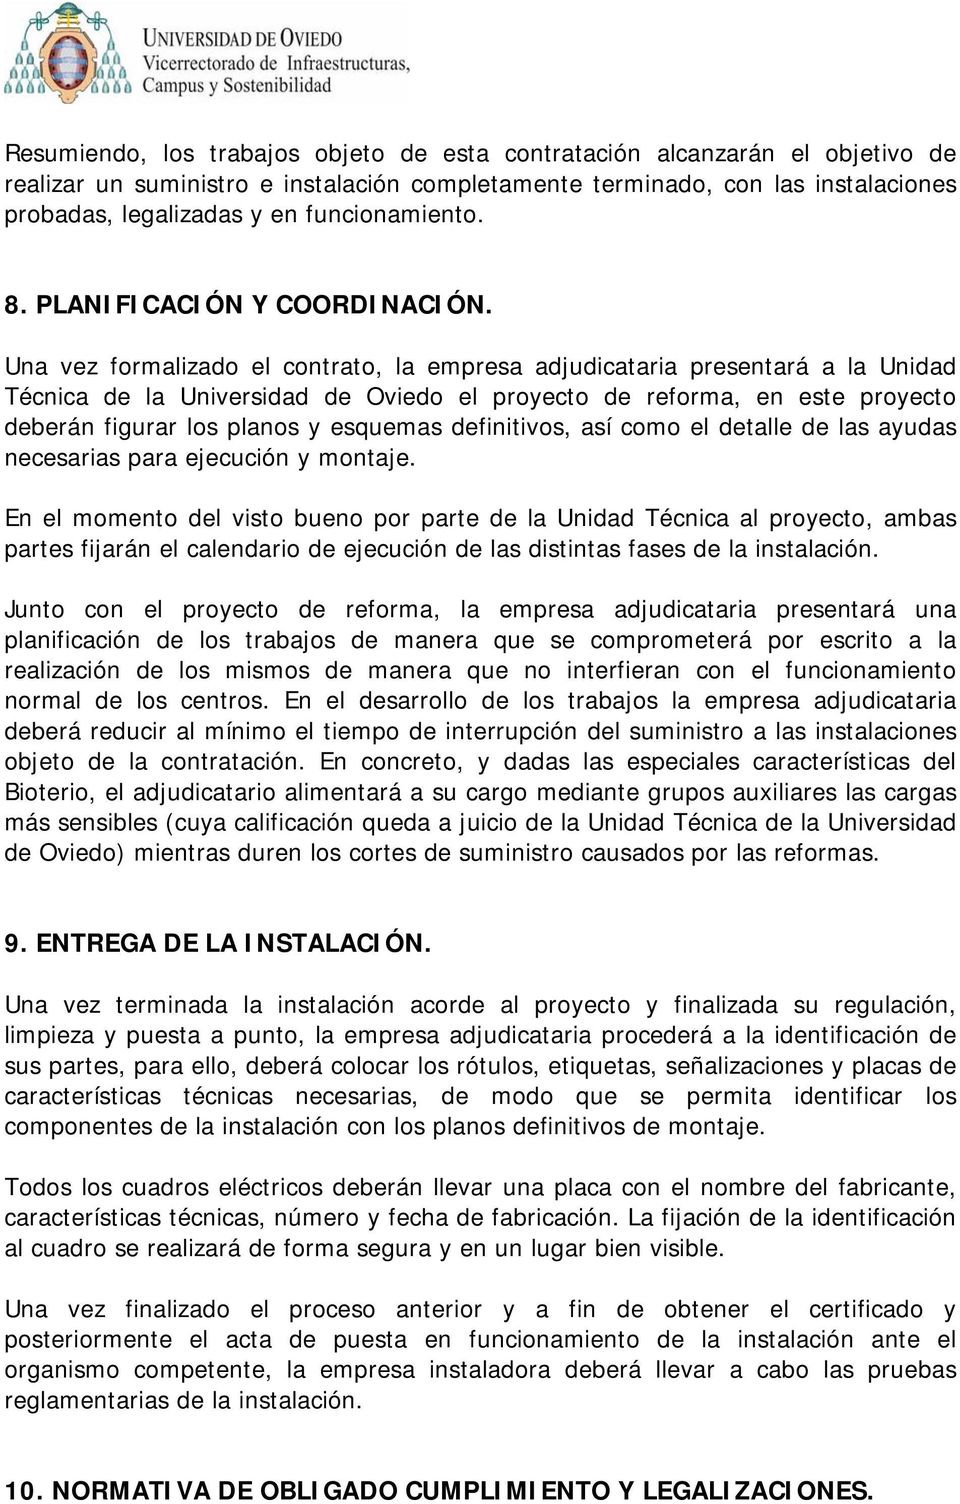 Una vez formalizado el contrato, la empresa adjudicataria presentará a la Unidad Técnica de la Universidad de Oviedo el proyecto de reforma, en este proyecto deberán figurar los planos y esquemas